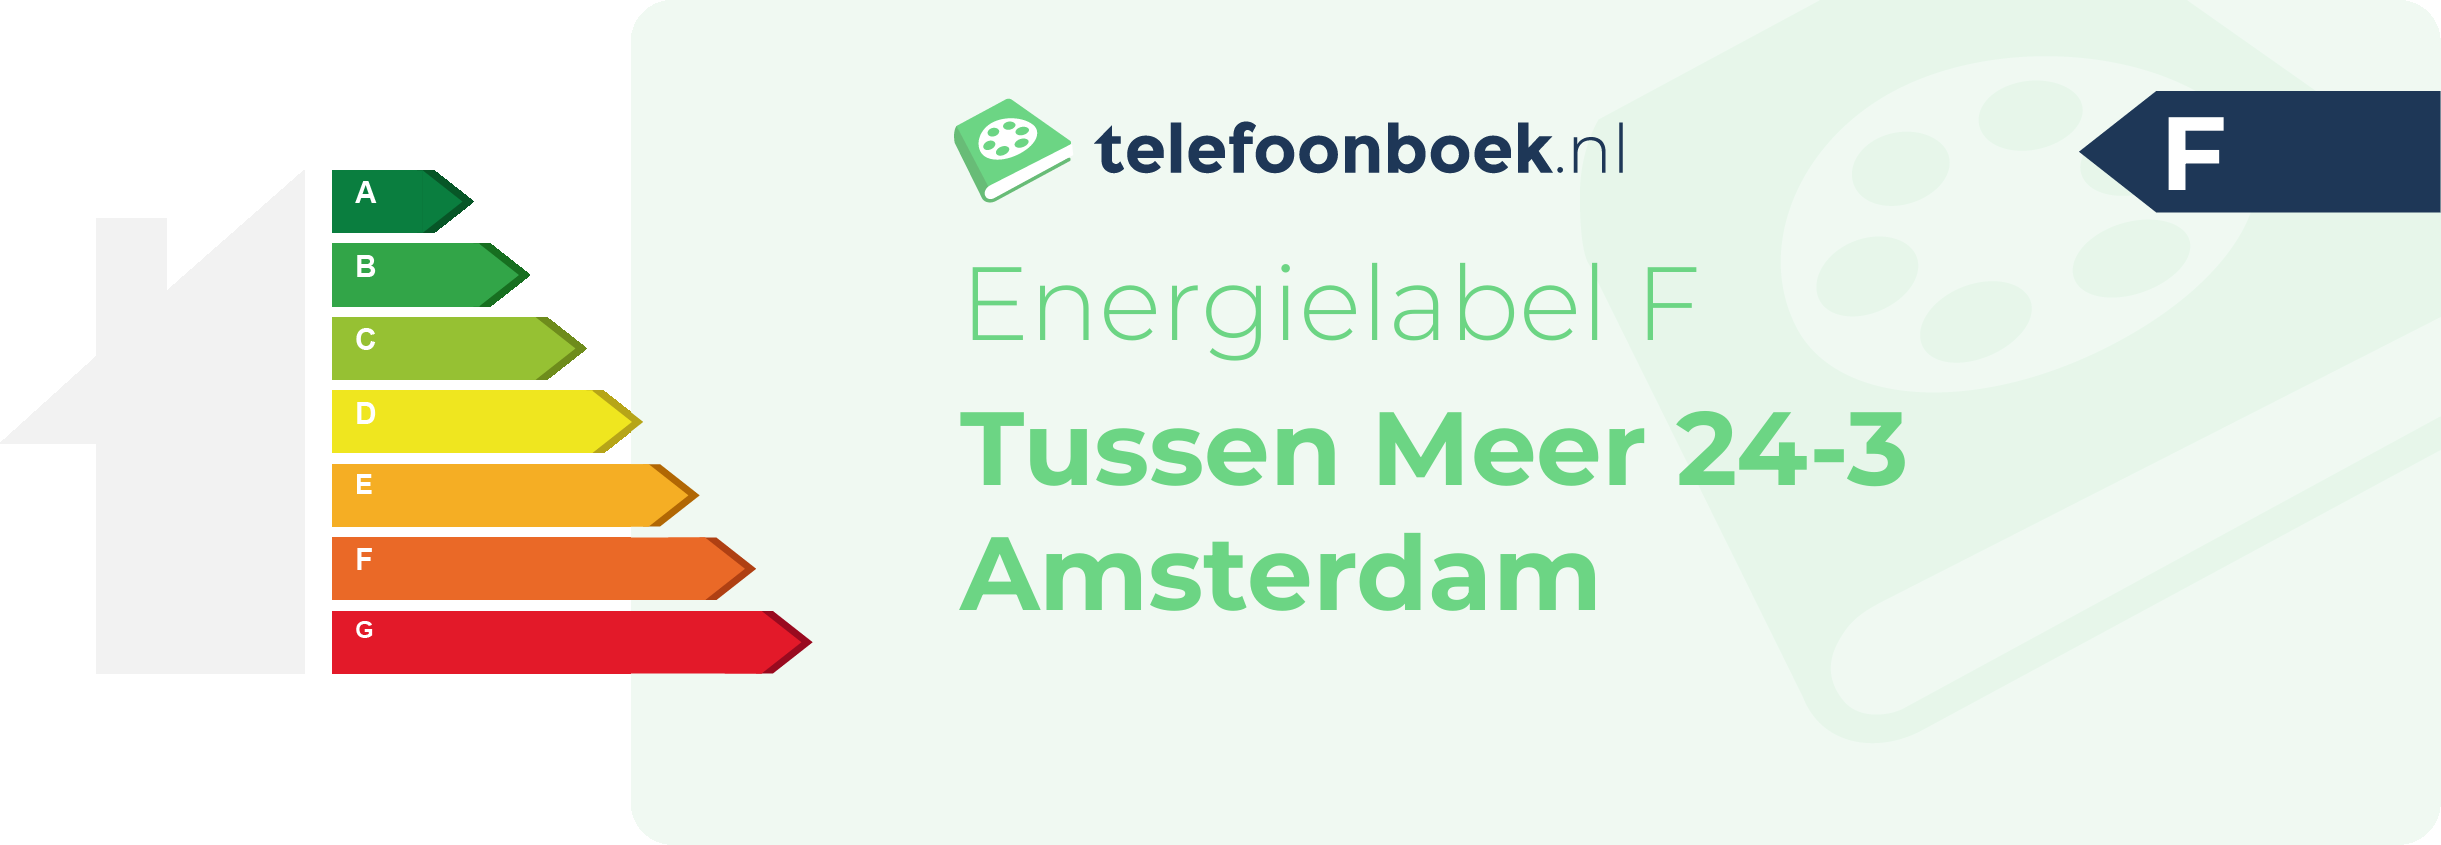 Energielabel Tussen Meer 24-3 Amsterdam